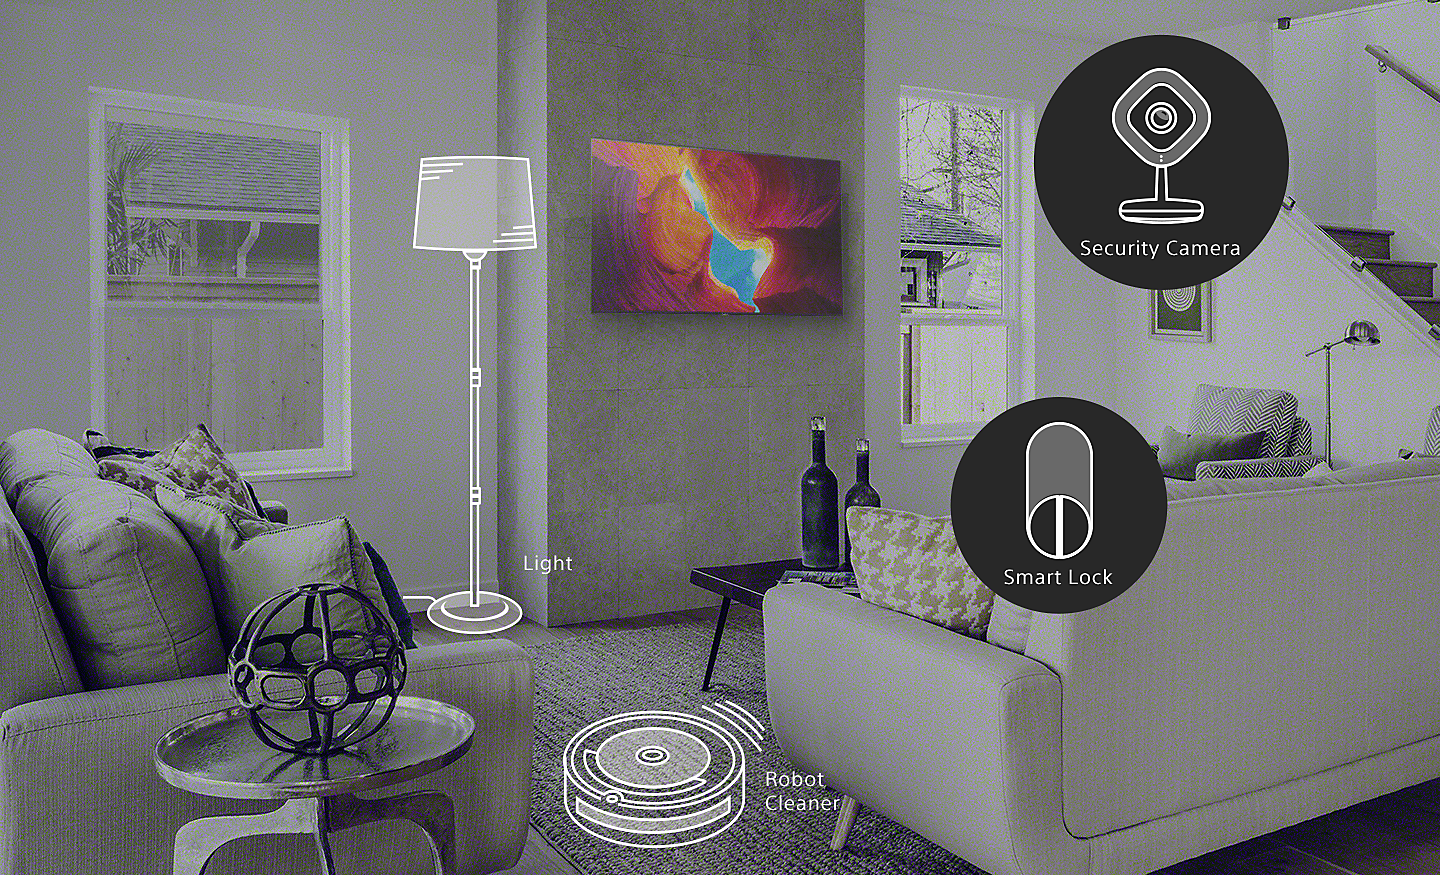 Obývačka s inteligentnými domácimi zariadeniami – svetlá, robotický vysávač, bezpečnostná kamera a inteligentný zámok